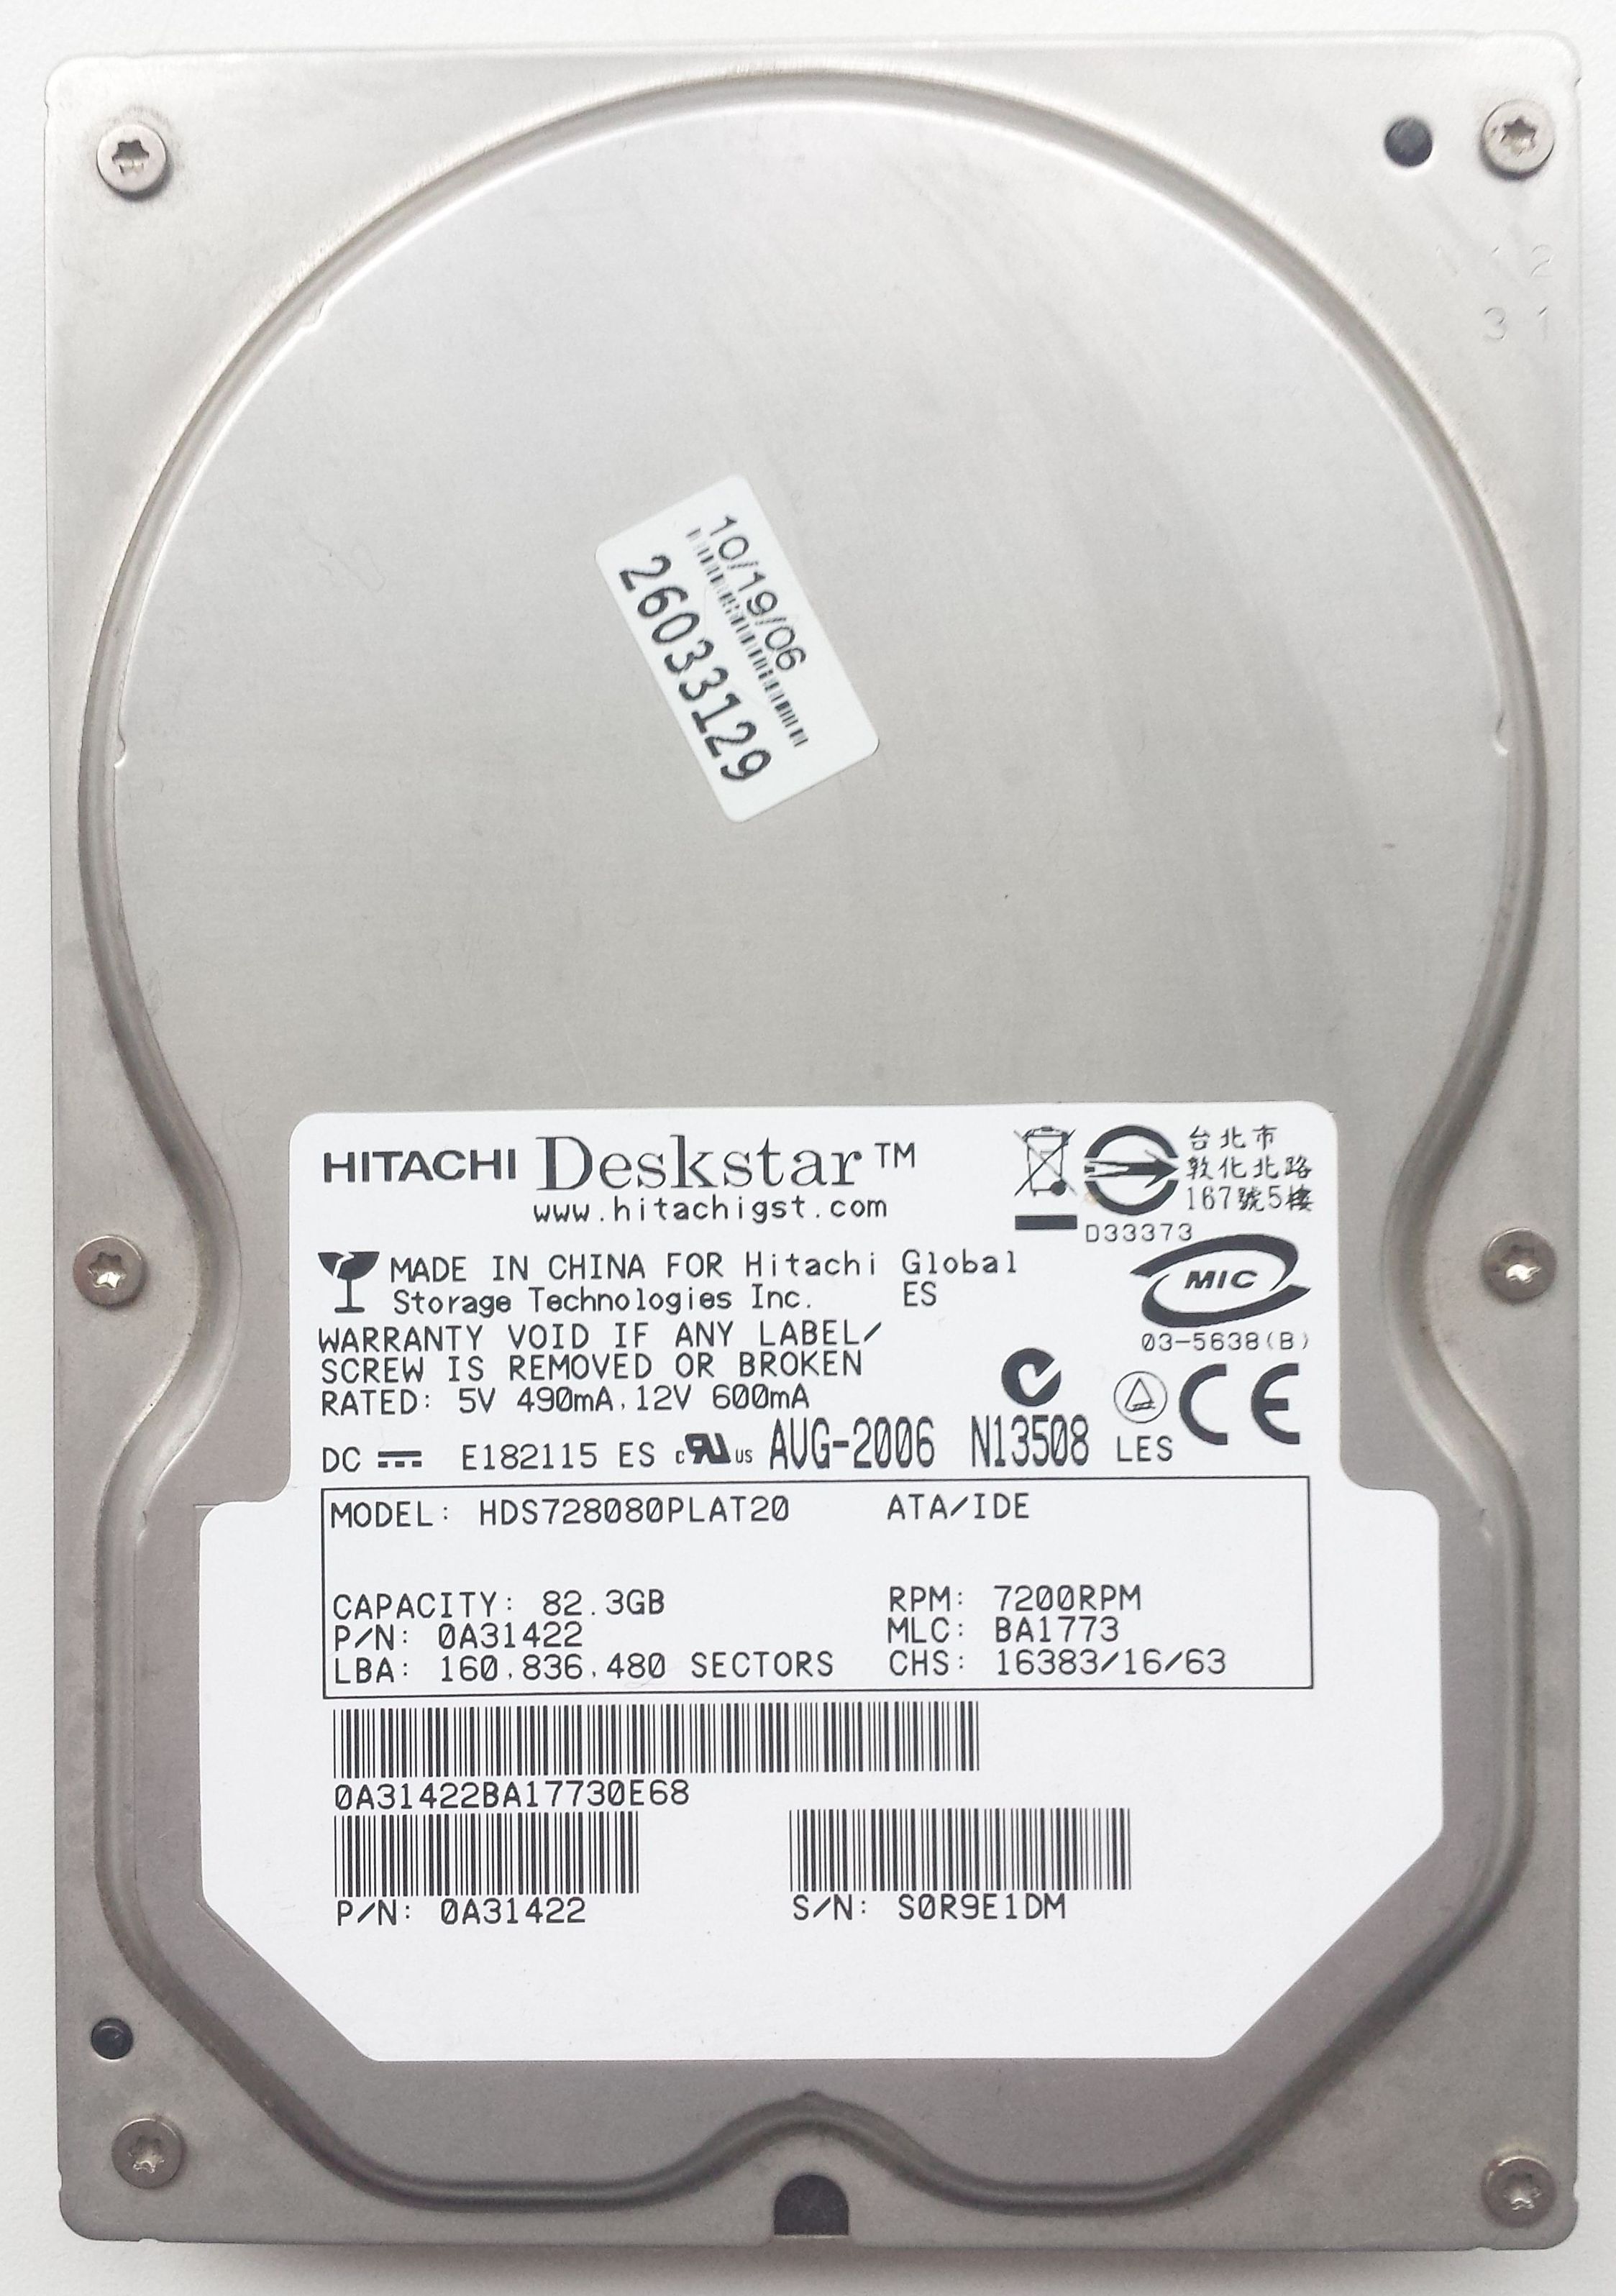 HDD PATA/133 3.5" 80GB / Hitachi Deskstar 7K80 (HDS728080PLAT20)